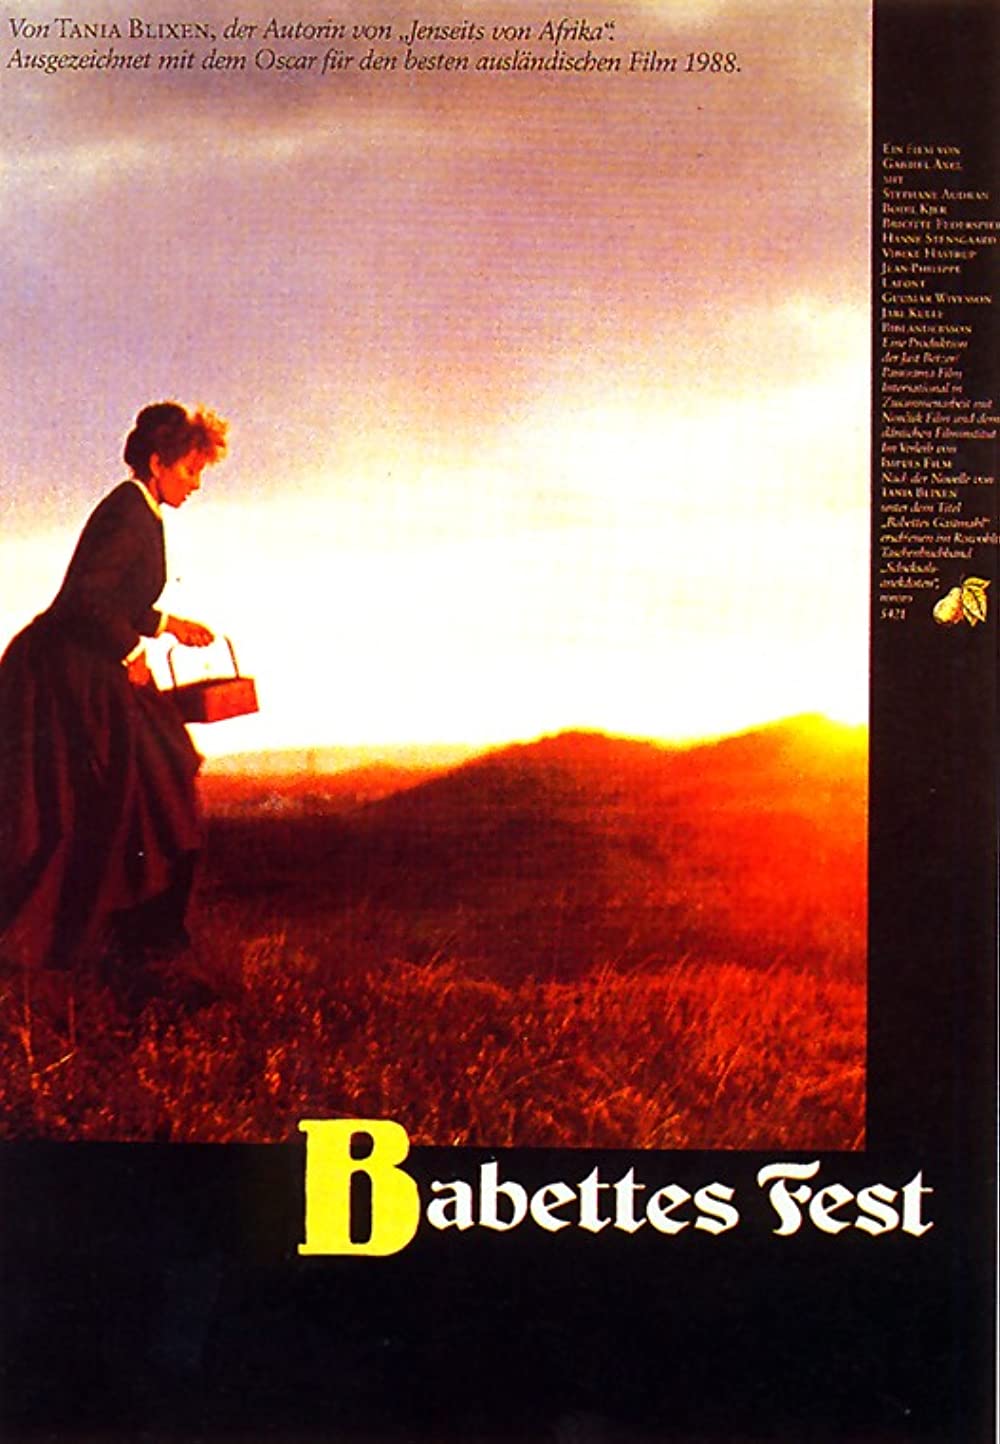 Filmbeschreibung zu Babettes Fest